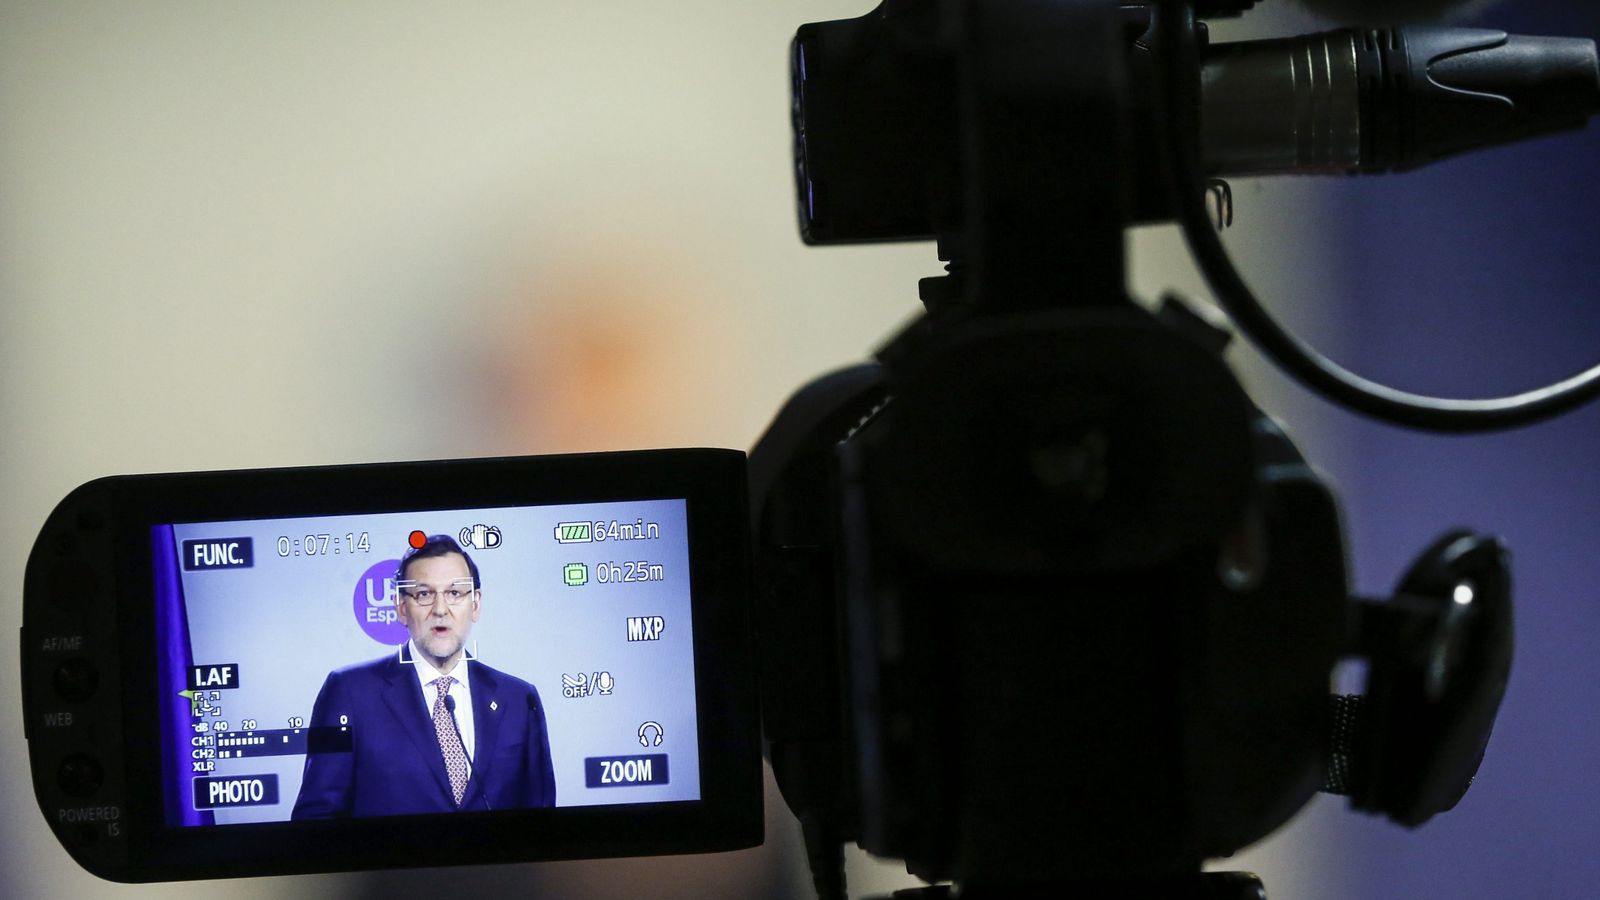 Foto: El monitor de una cámara muestra al presidente del Gobierno en funciones, Mariano Rajoy. (EFE)